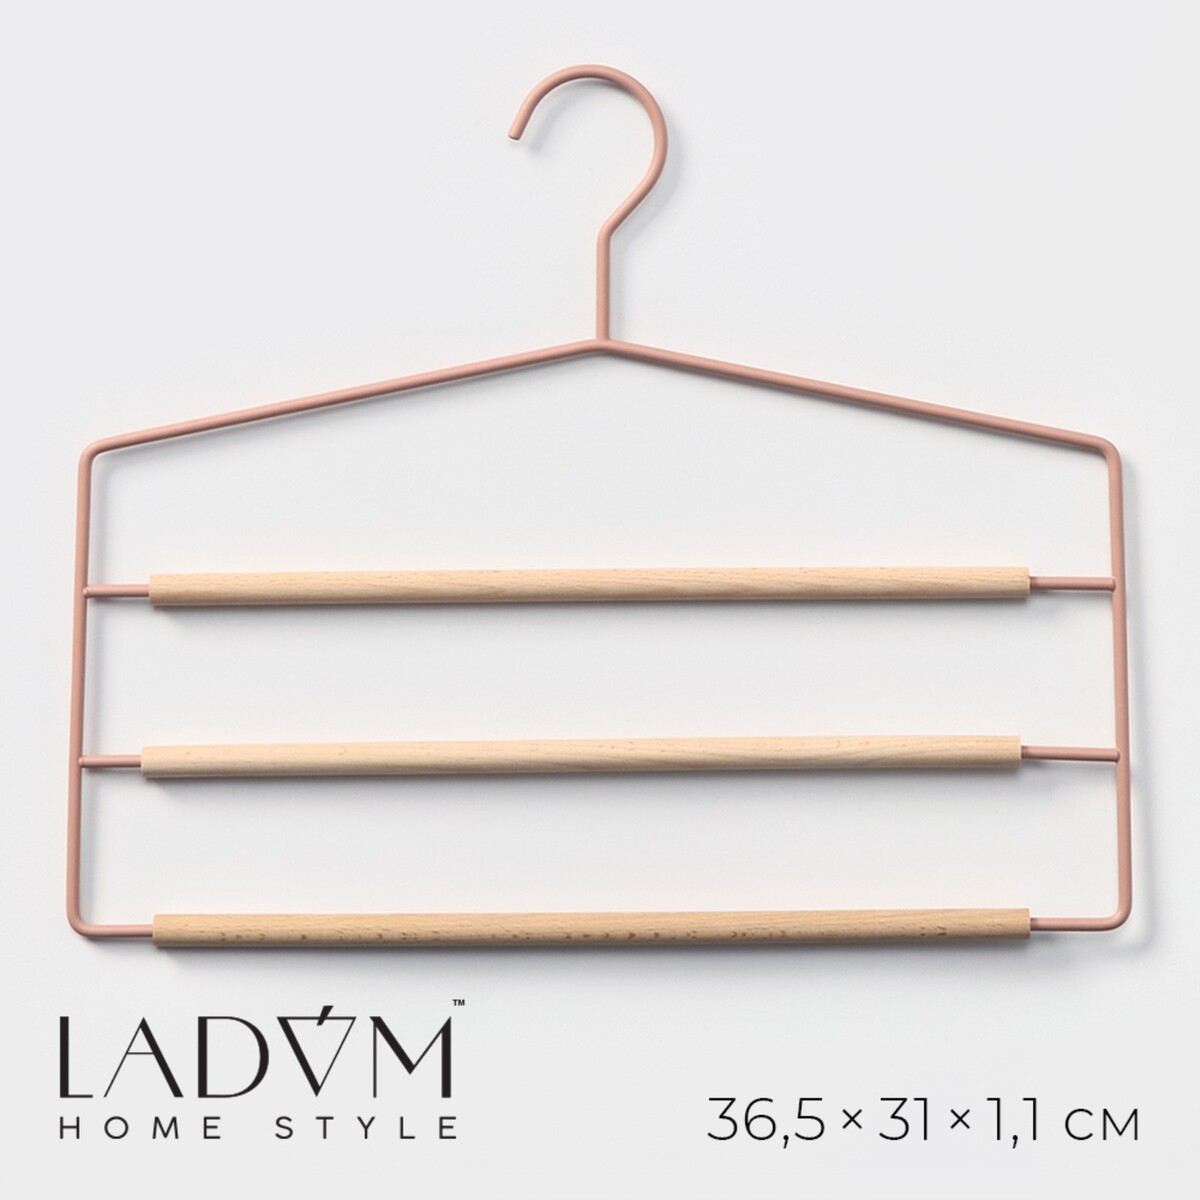 Плечики - вешалки оргазайзер для брюк и юбок ladо́m laconique, 36,5×31×1,1 см, цвет розовый